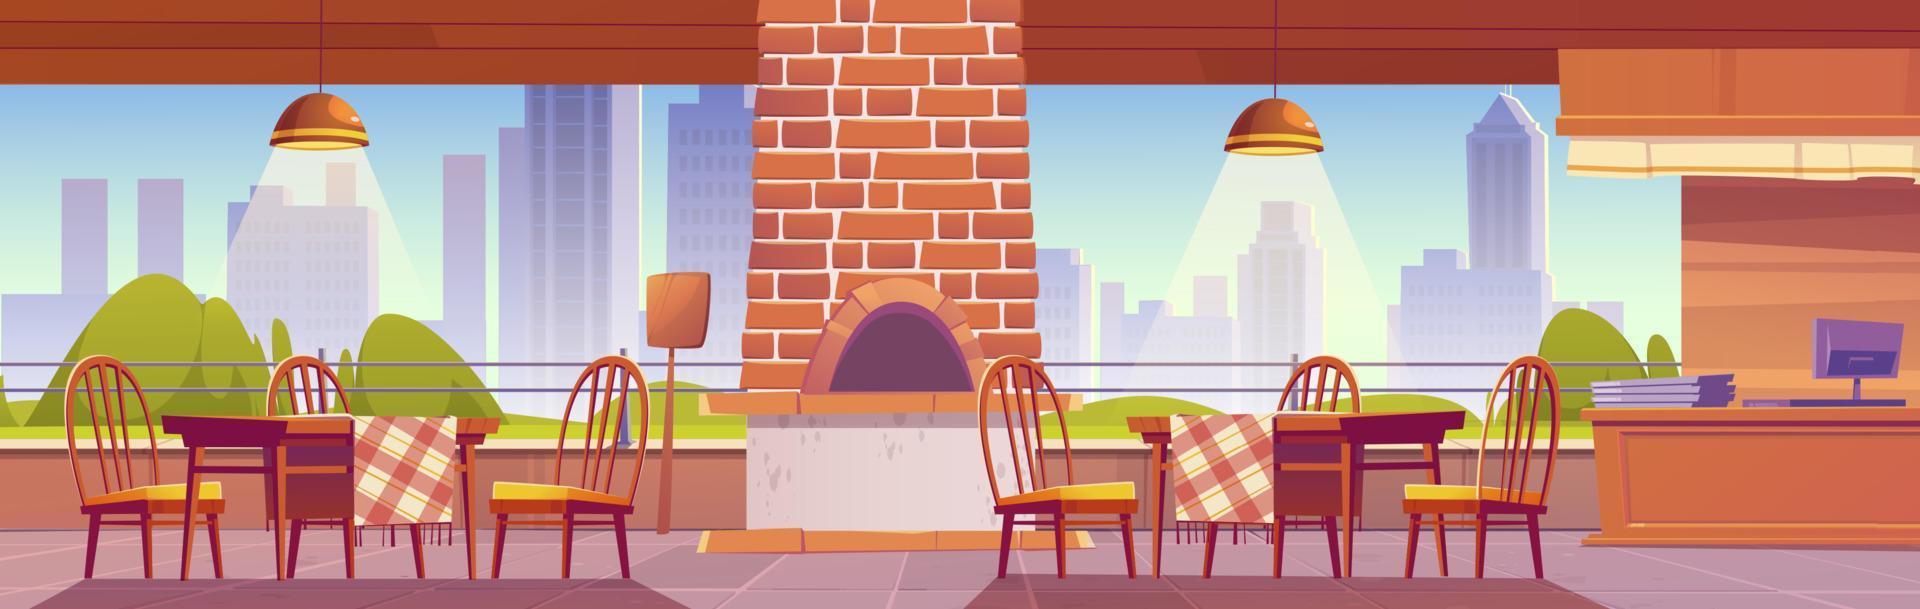 pizzería o cafetería familiar al aire libre con horno vector